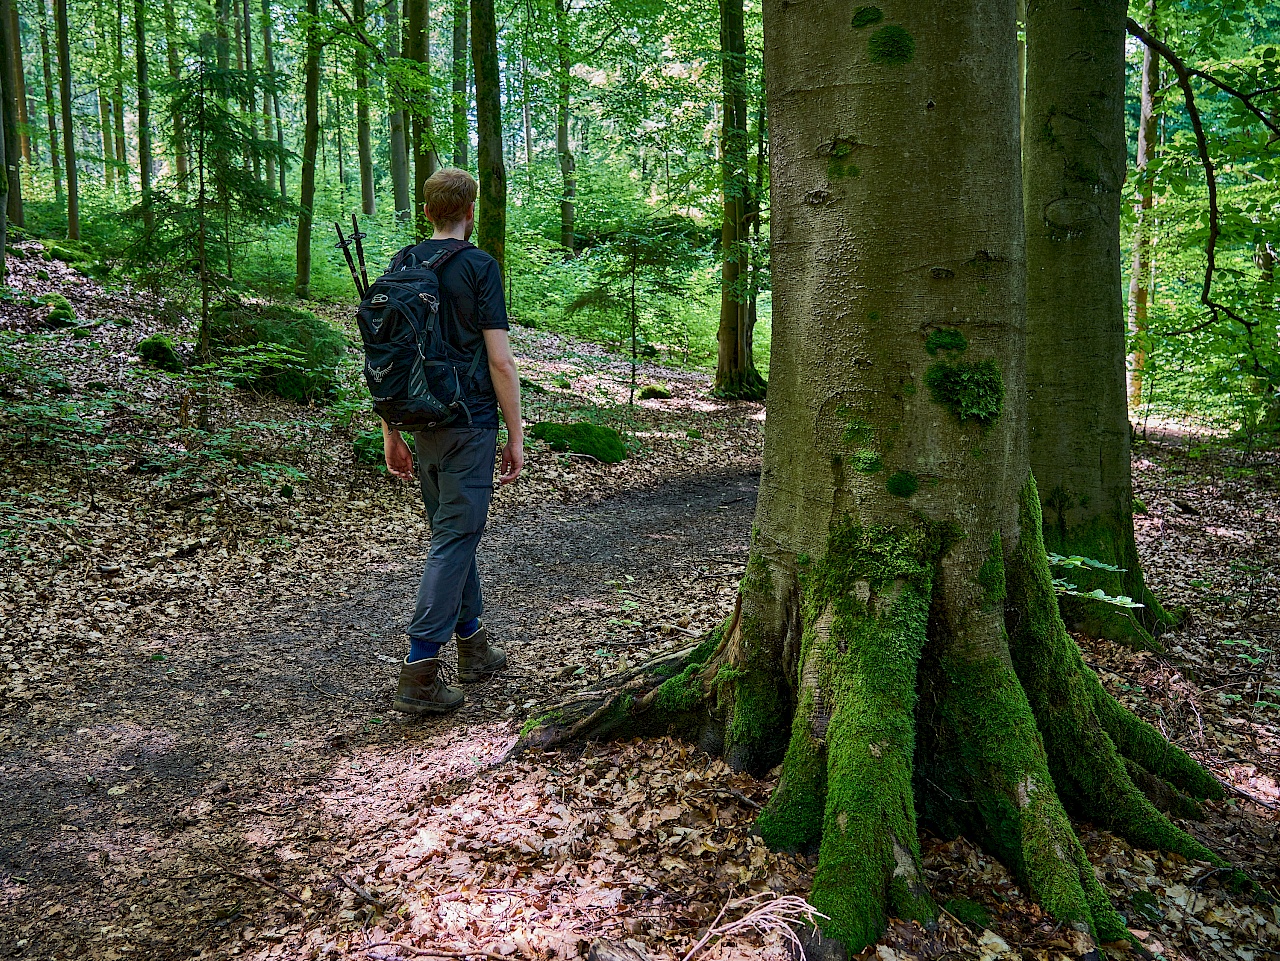 Wandern durch traumhafte Wälder im Nürnberger Land